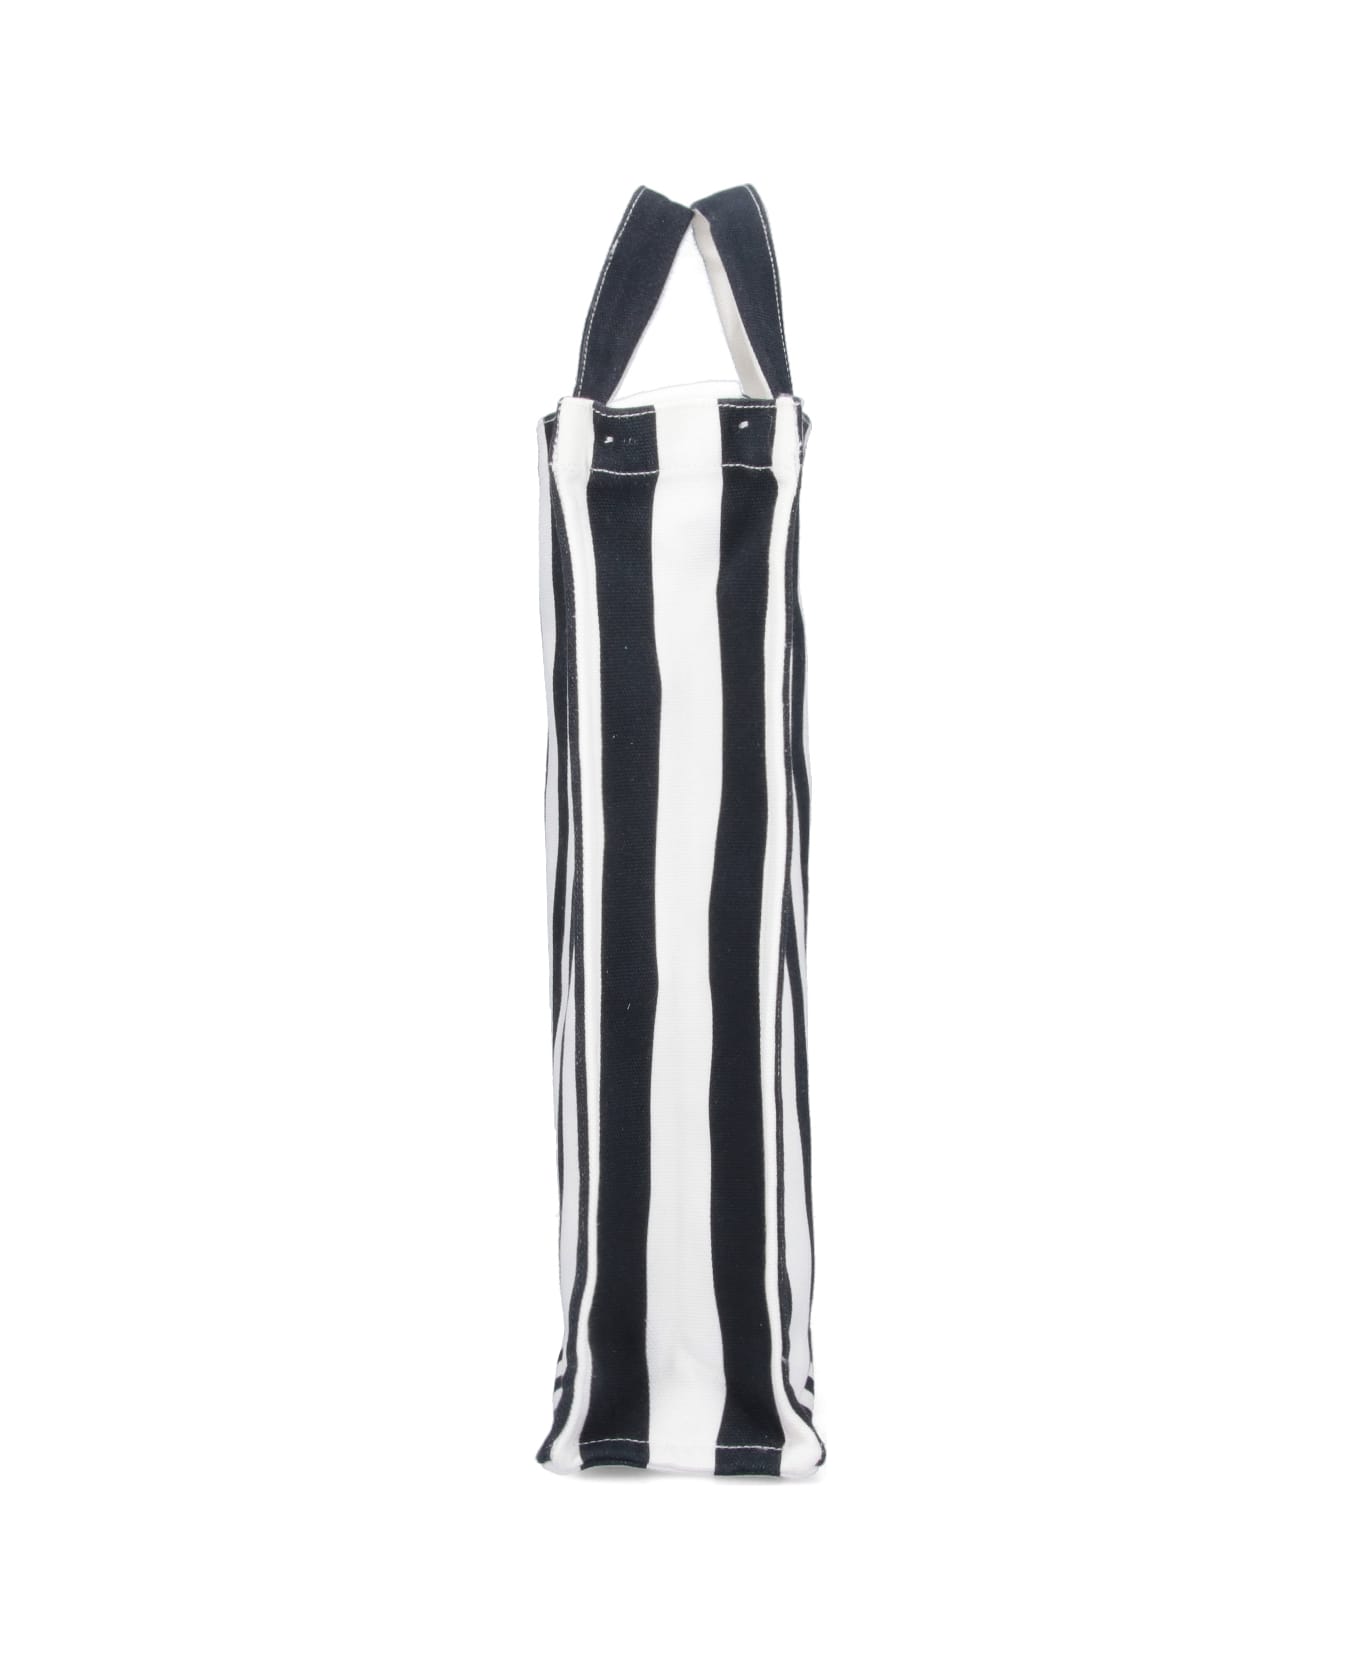 Patou Striped Tote Bag - Black   トートバッグ